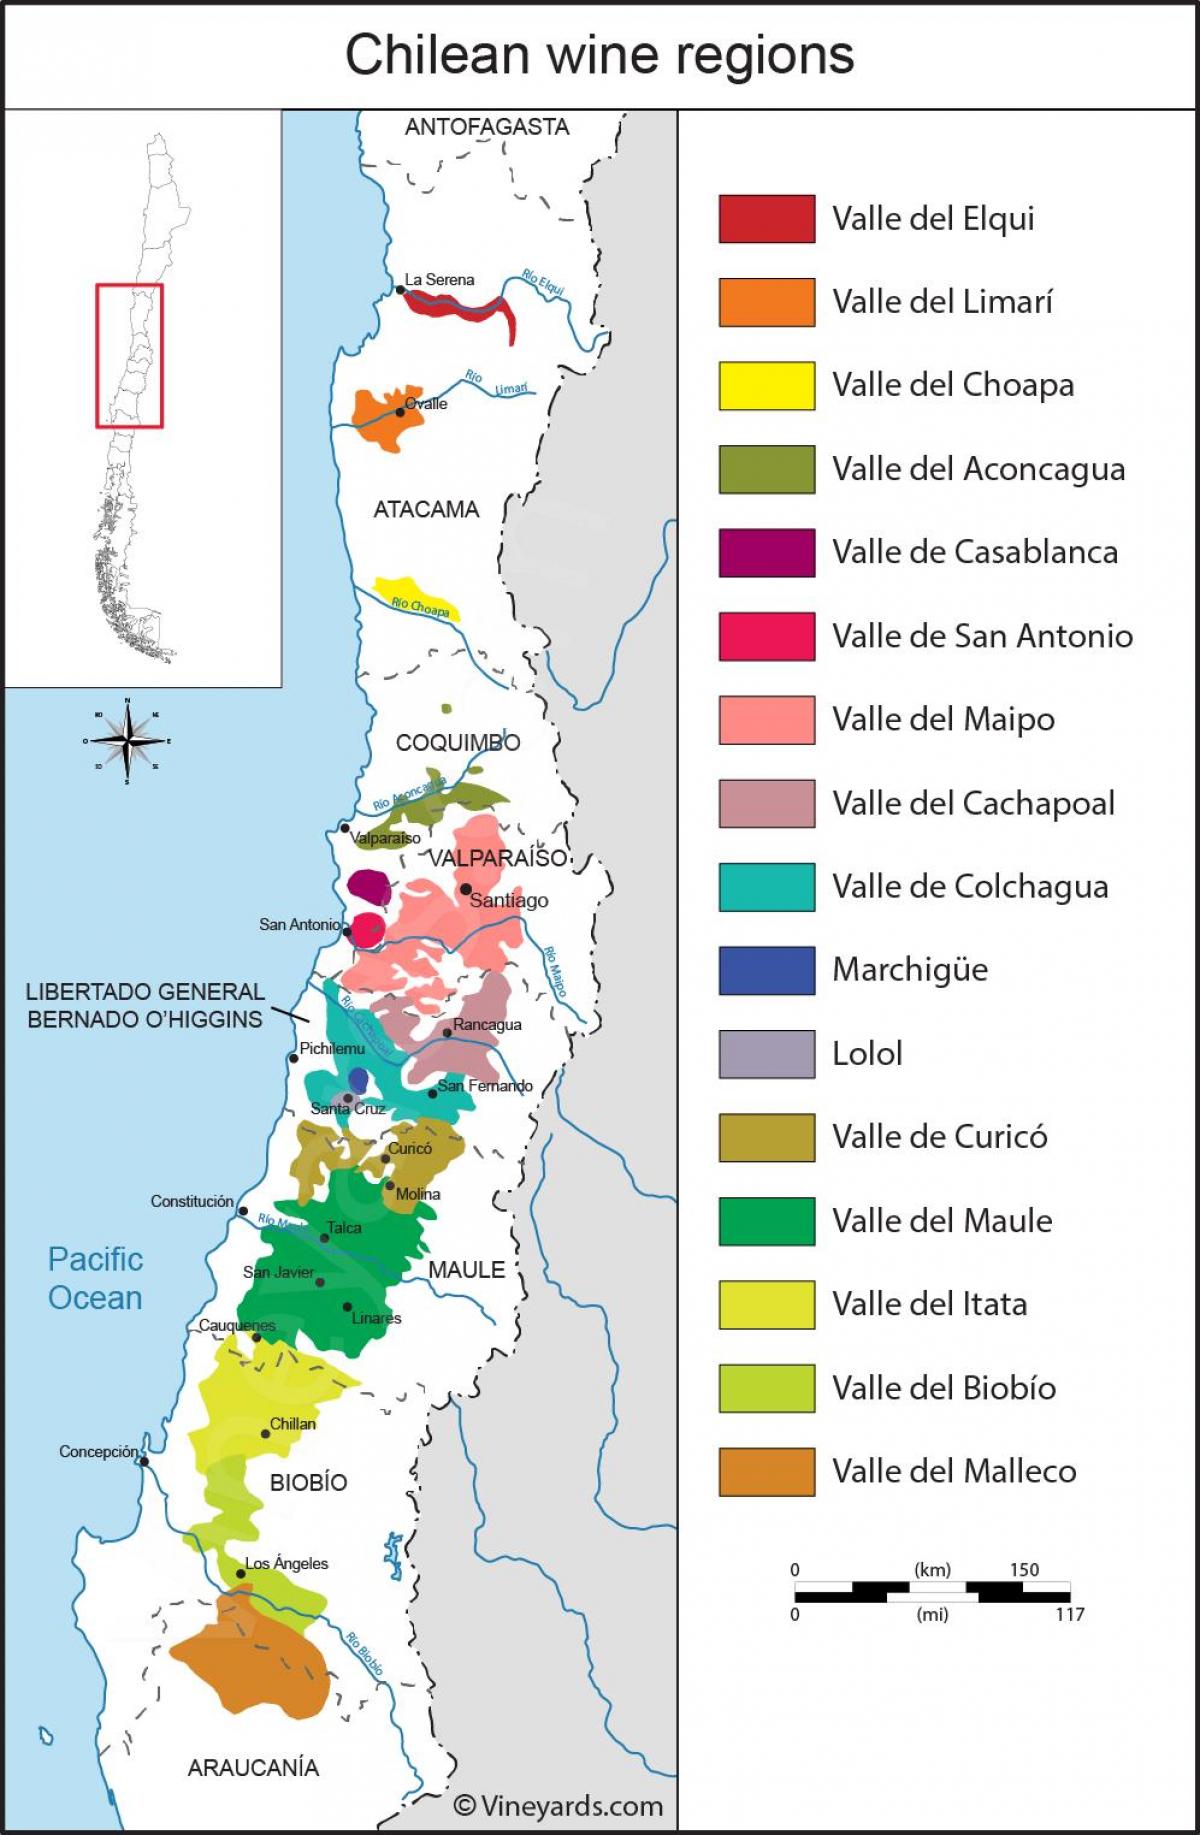 Zemljevid Čile vinskih regij 